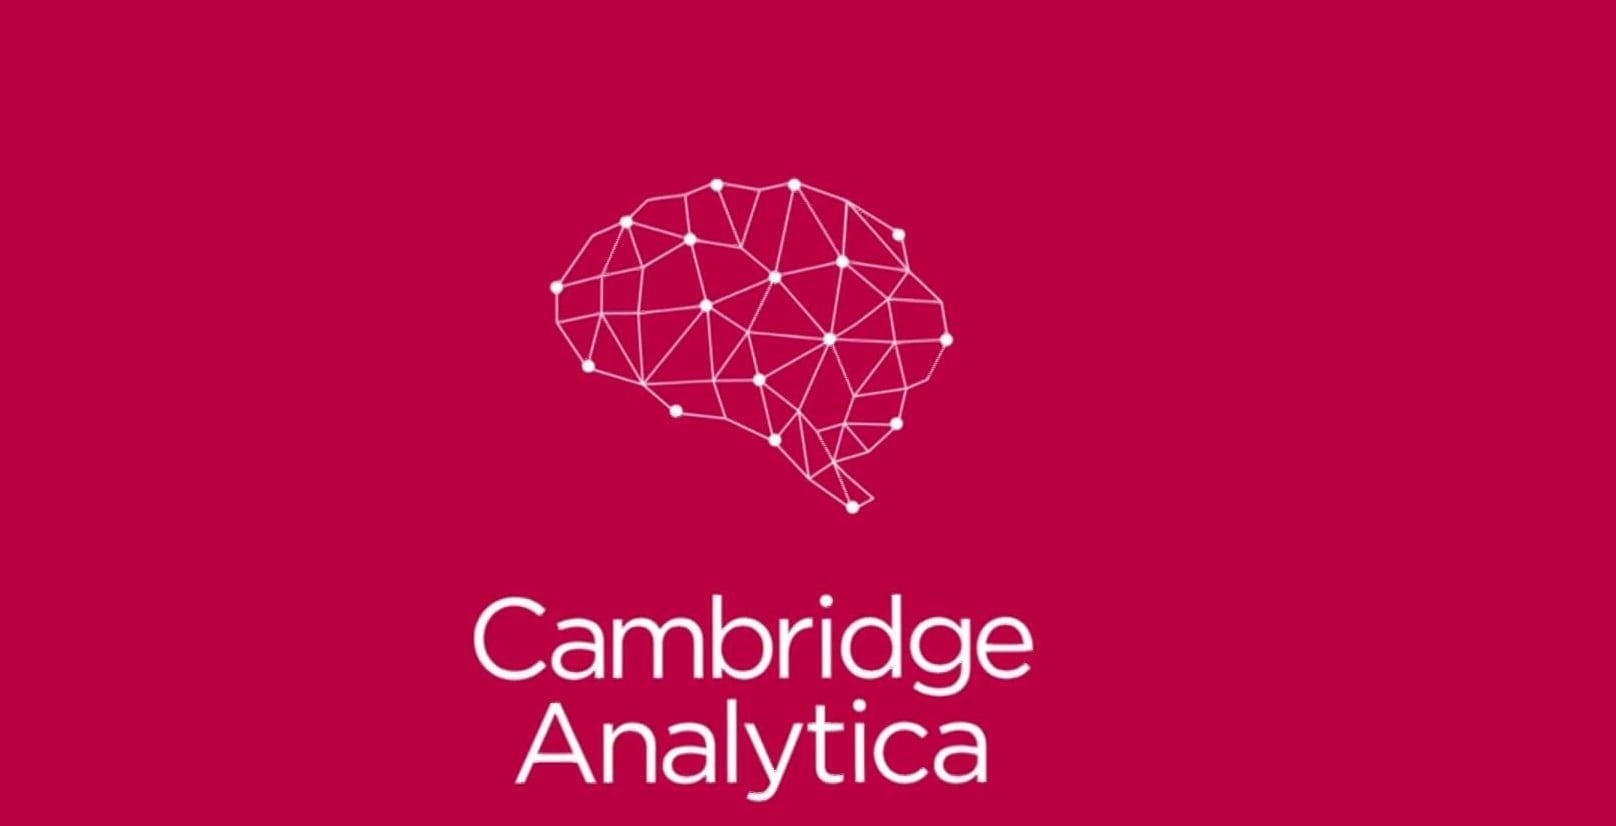 La société Cambridge Analytica effectuait des ciblages en fonction des marques de vêtements des utilisateurs de Facebook.